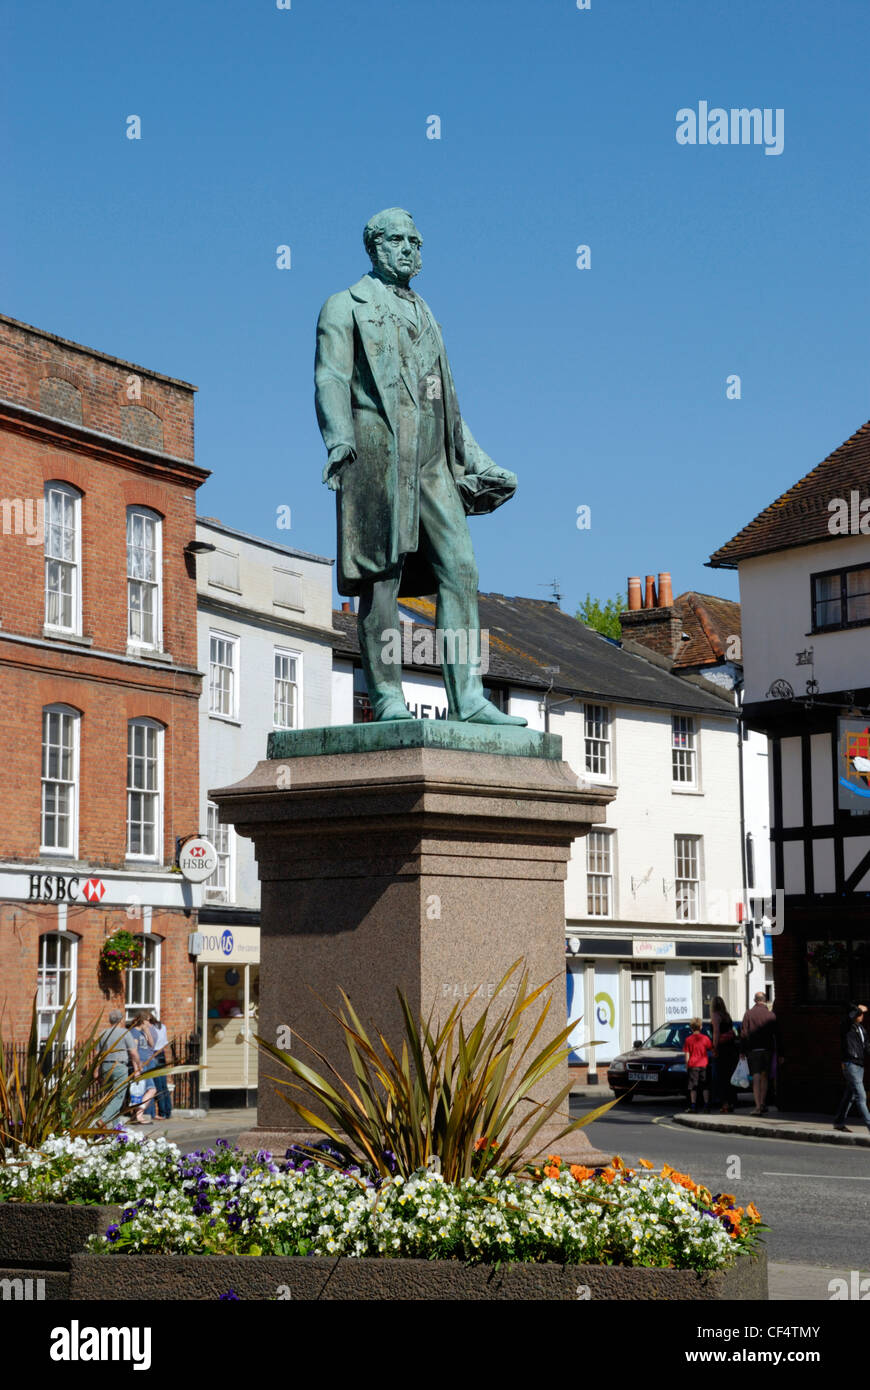 Eine Statue von Lord Palmerston im Marktplatz, Romsey. Lord Palmerston war zweimal Premierminister von 1855 bis 1865. Stockfoto